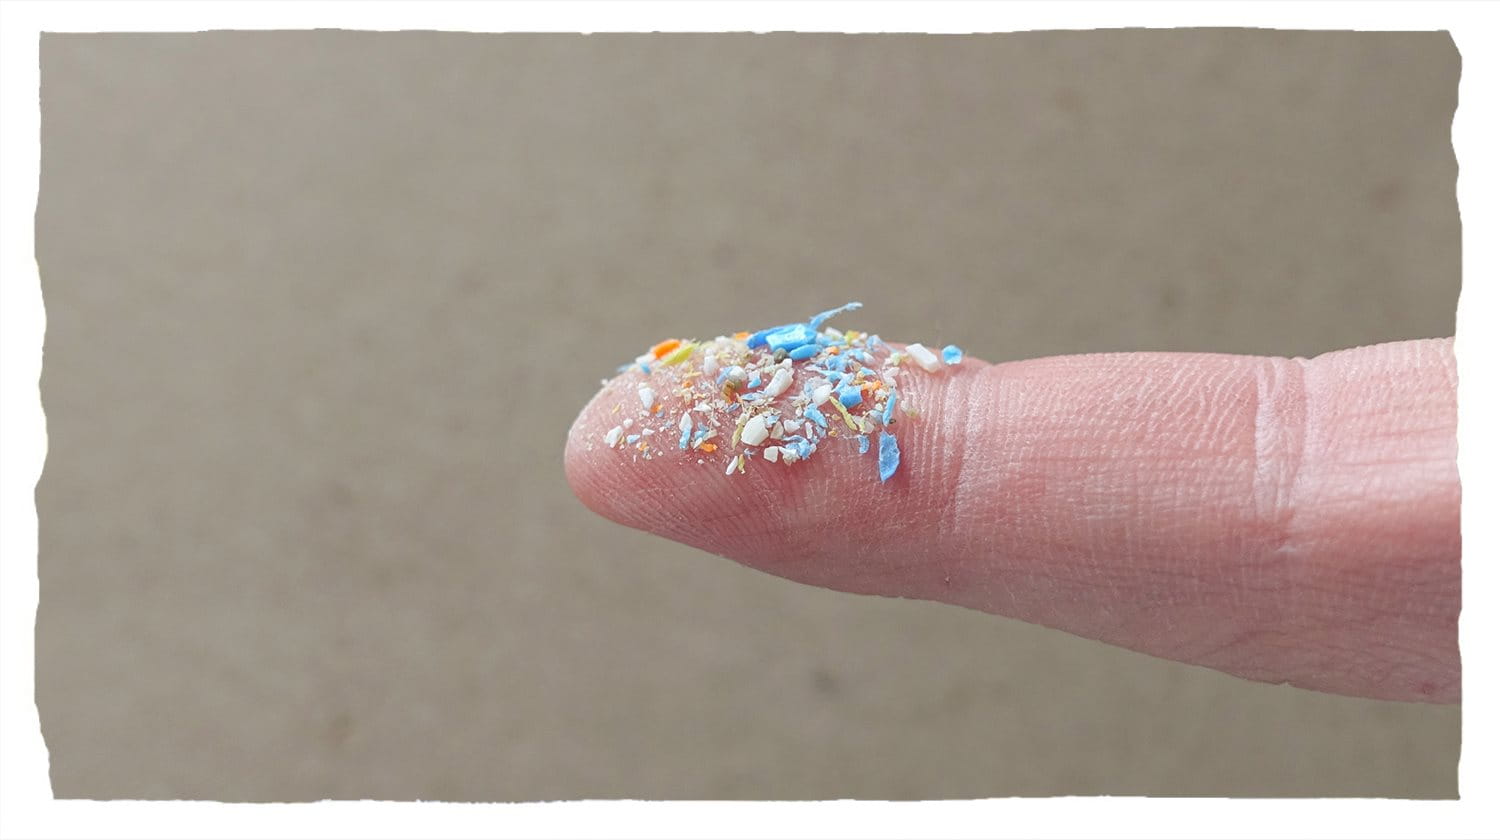 Plastic deeltjes zichtbaar op het topje van een vinger